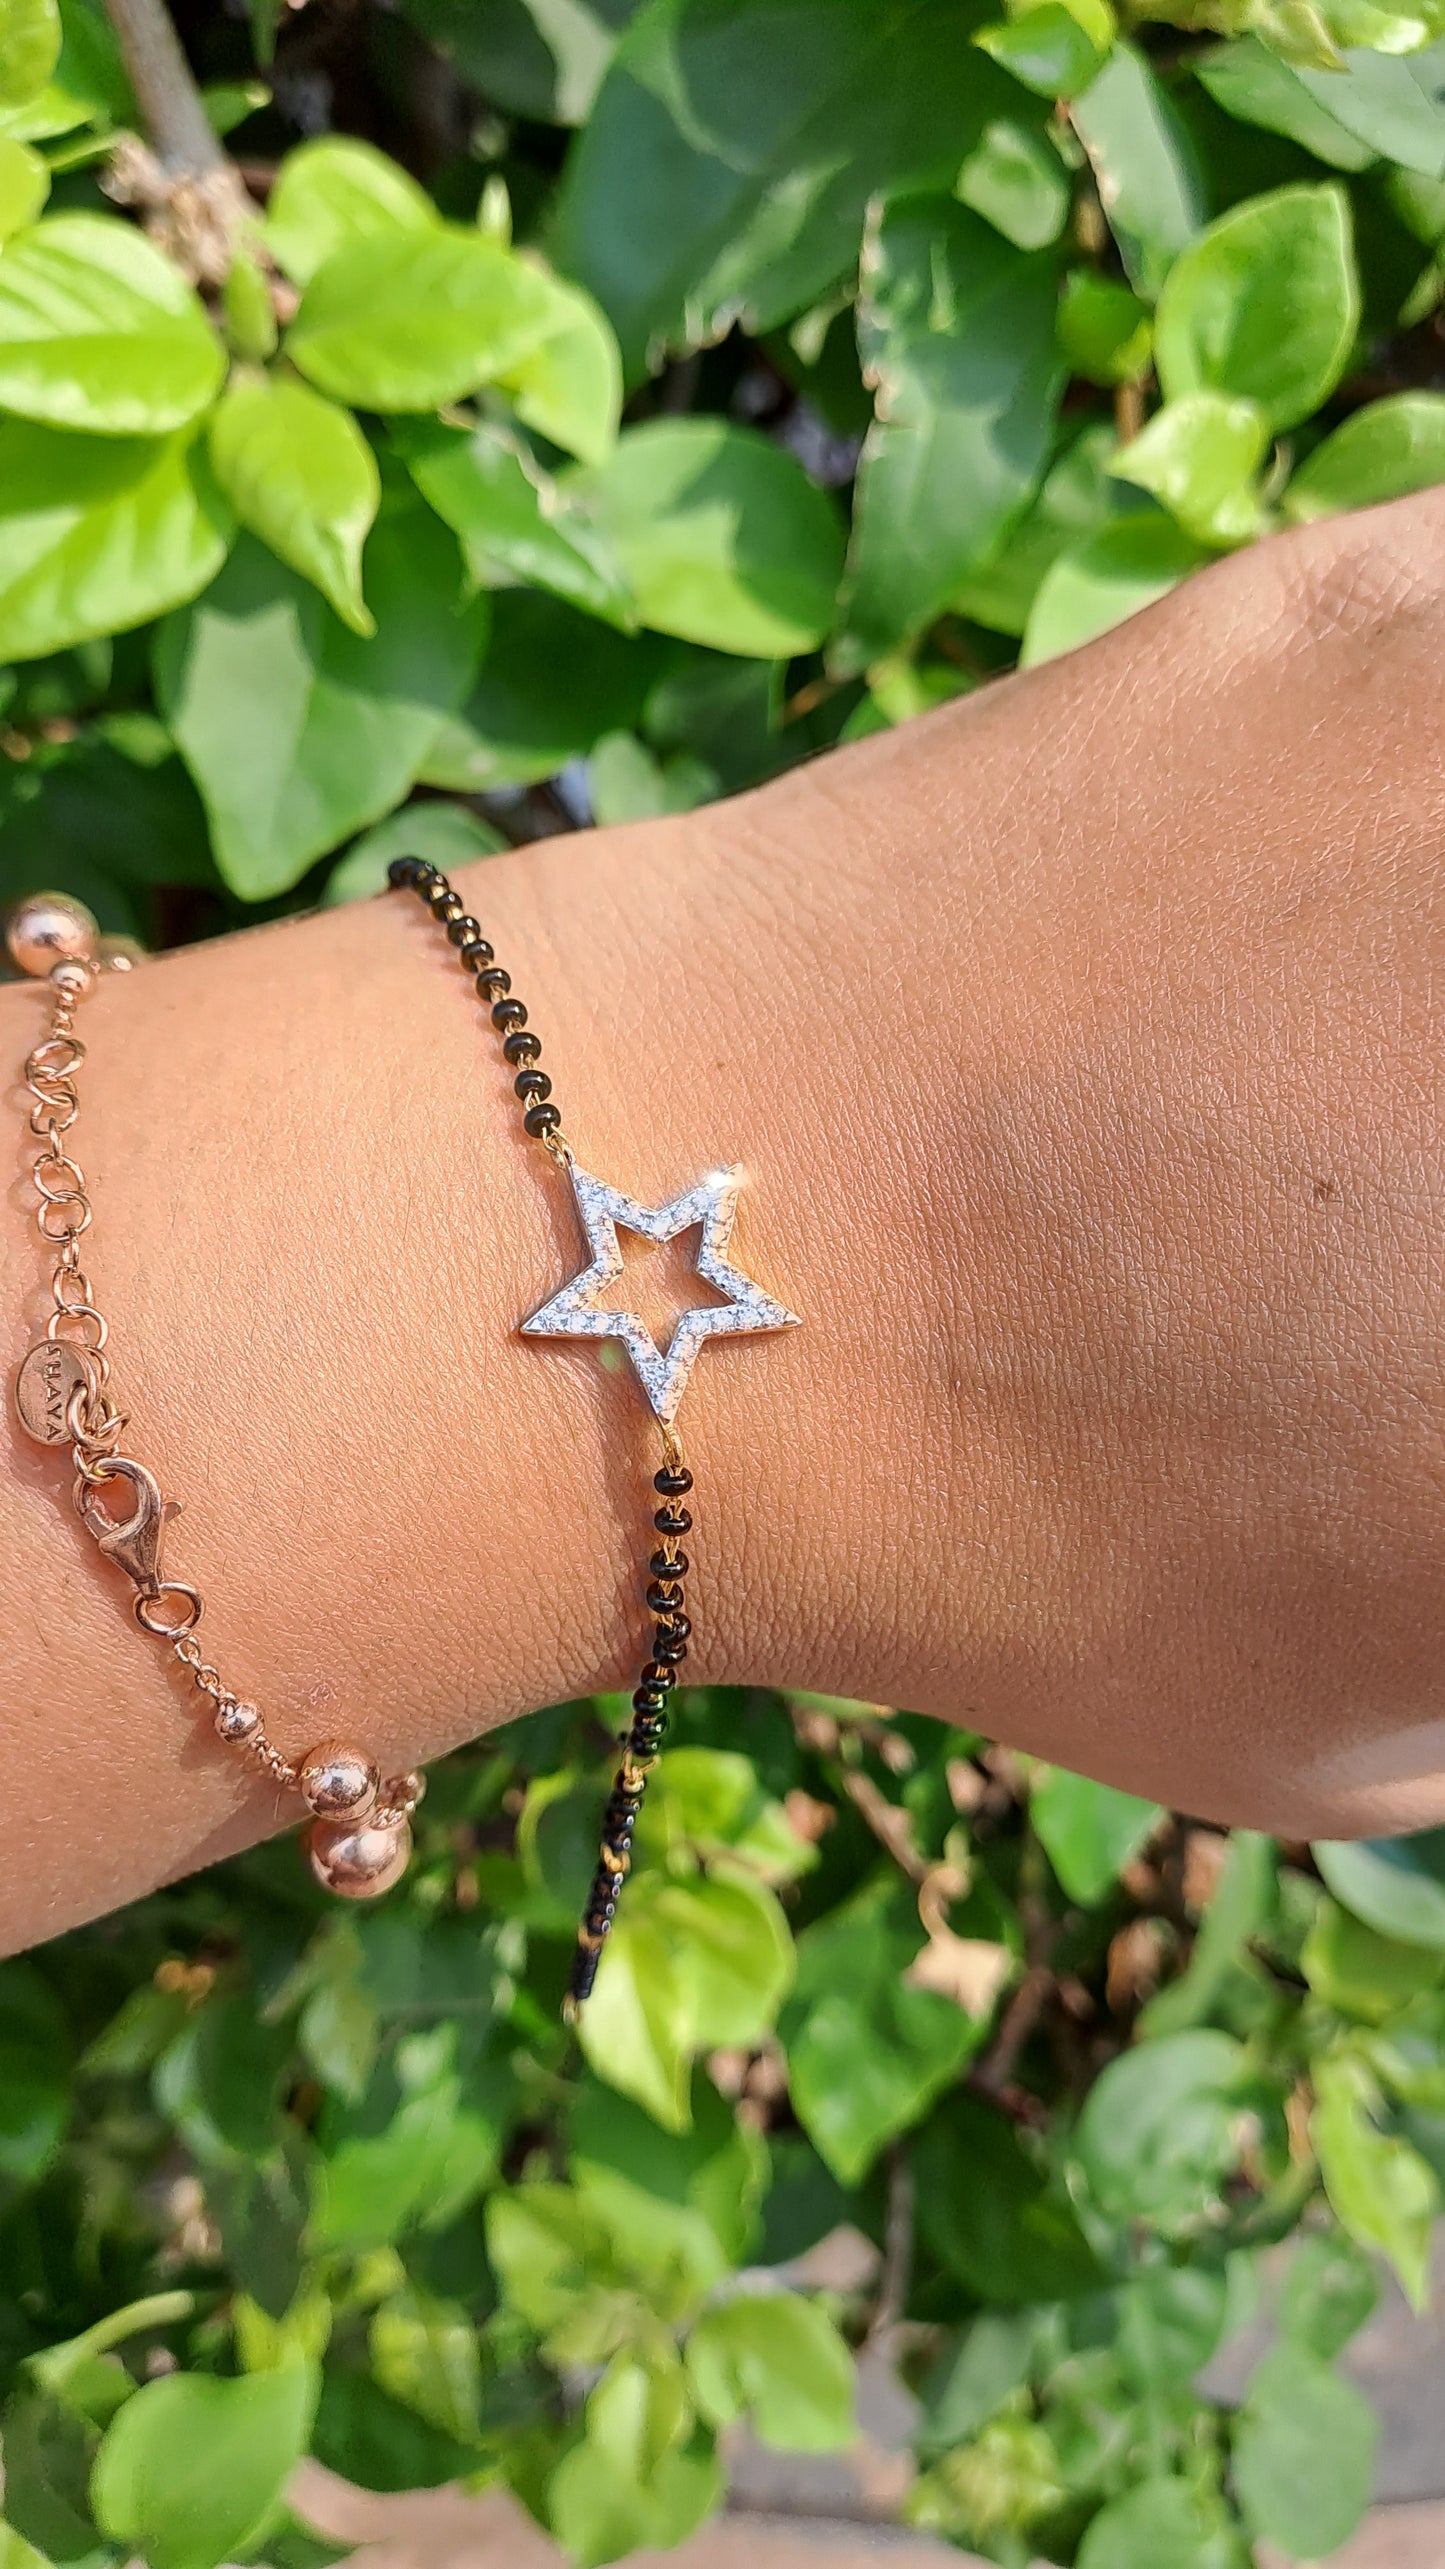 Star Moissanite Diamond Bangle bracelet and Mangalsutra Bracelet